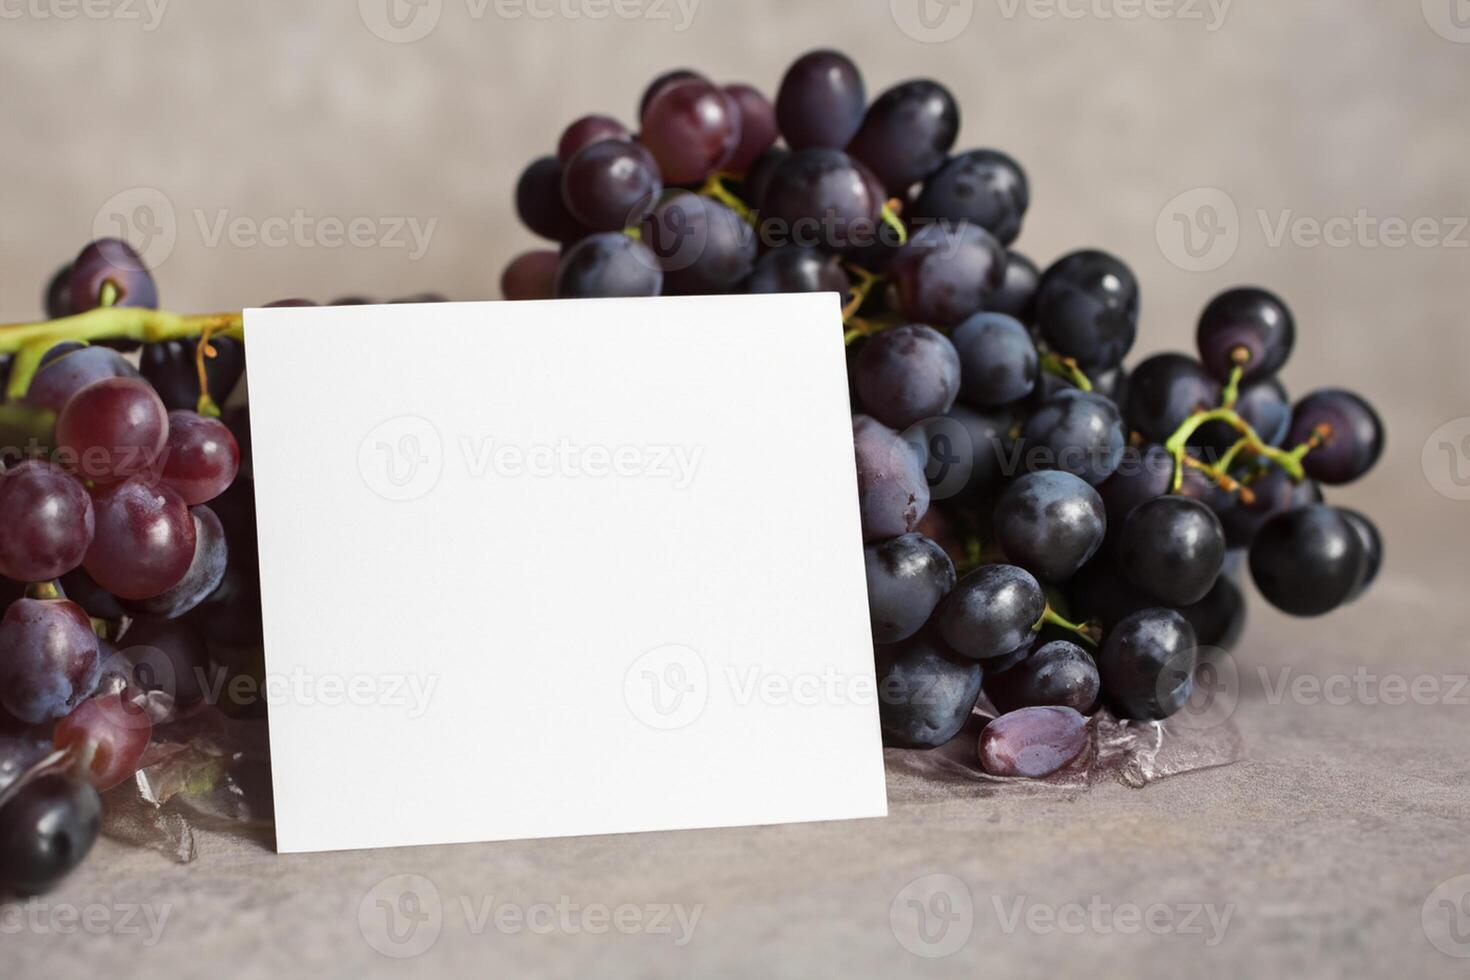 branco papel brincar melhorada de a suculento fascinar do fresco uvas, construindo uma visual sinfonia do culinária elegância e saudável imagens, Onde gráfico Projeto floresce dentro uma festa do vibrante criatividade foto